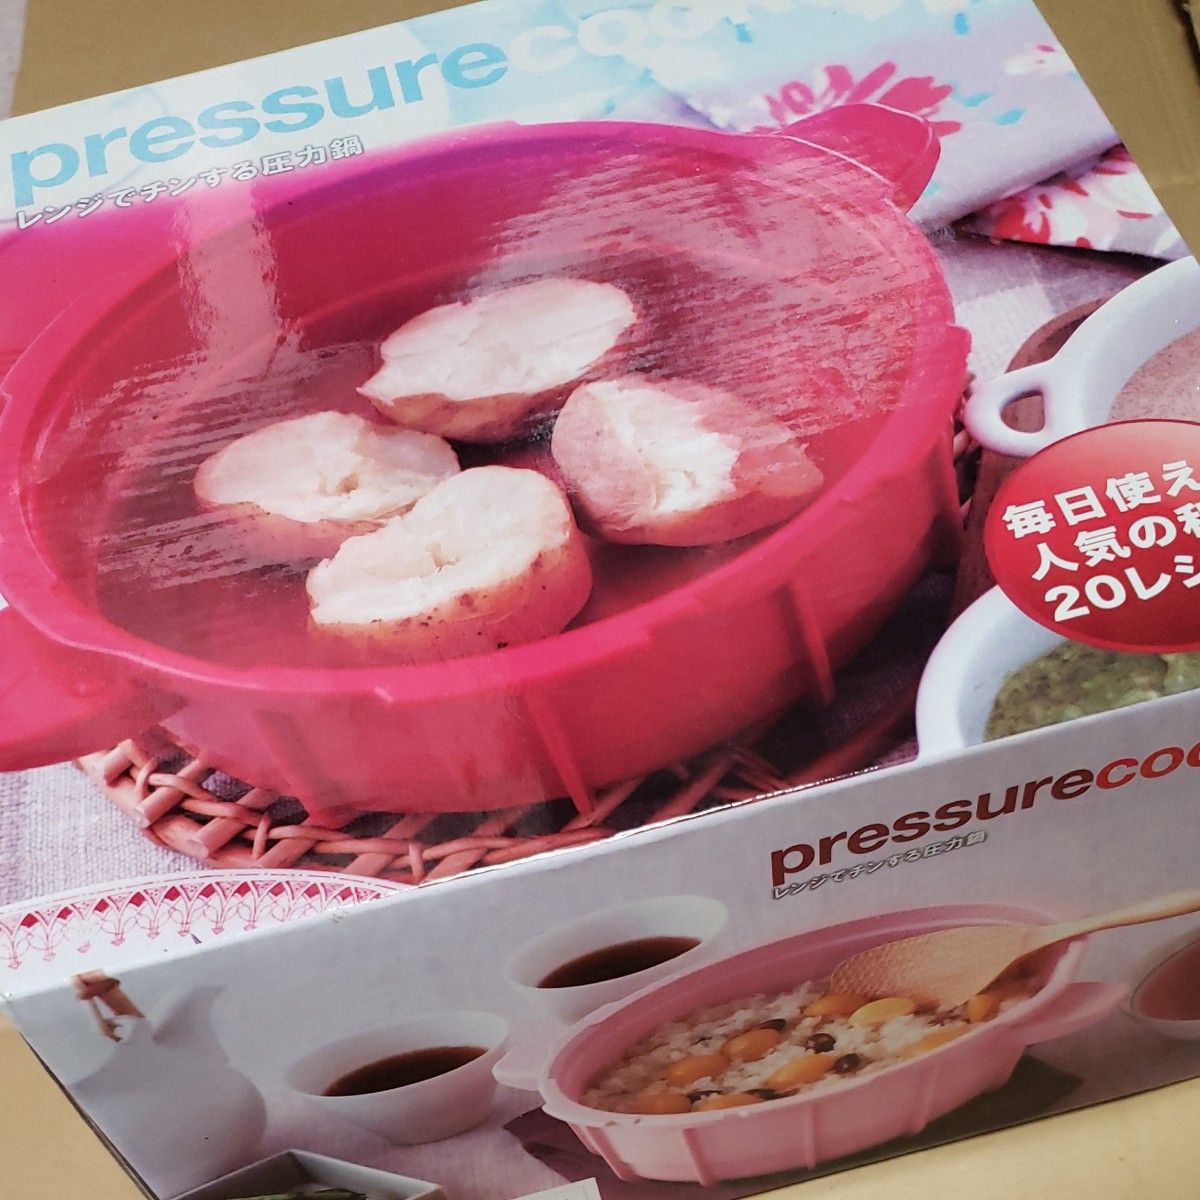 ※同封のレシピ無し【新品★未使用】  マイヤー    pressure cooker  電子レンジ圧力鍋2.3L    ピンク